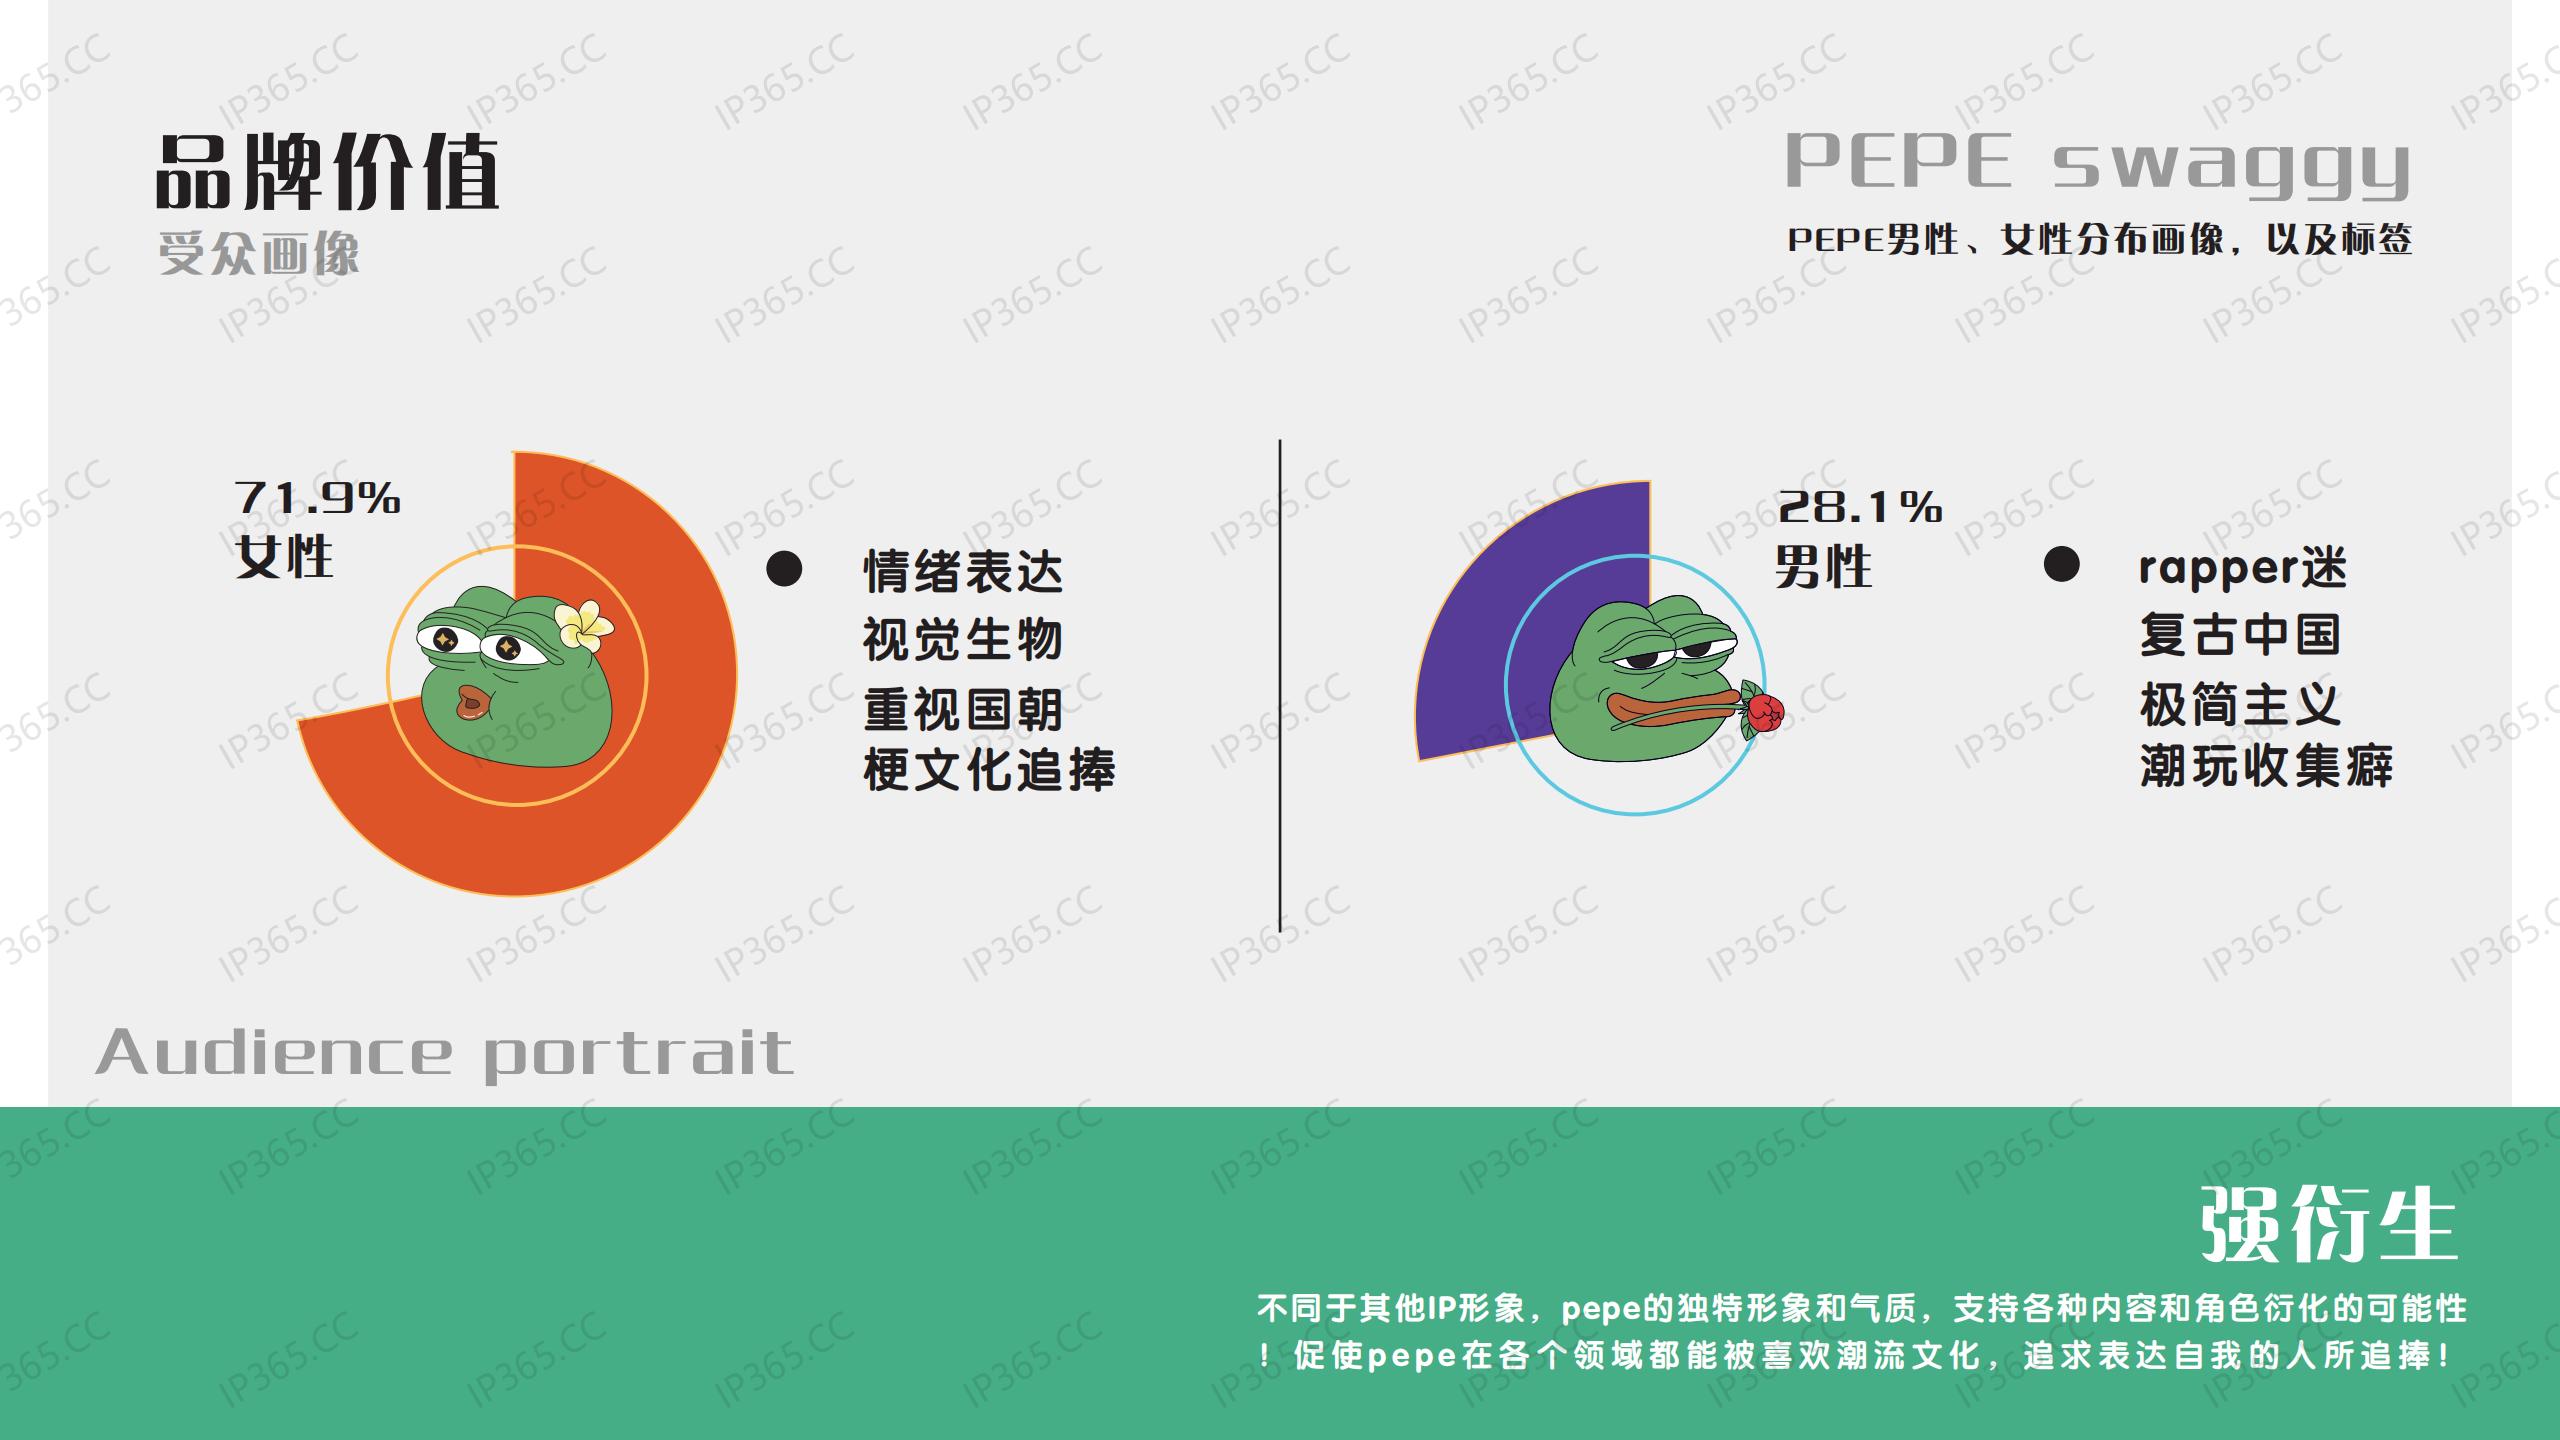 悲伤蛙PEPE 2020合作宣传手册_07.jpg